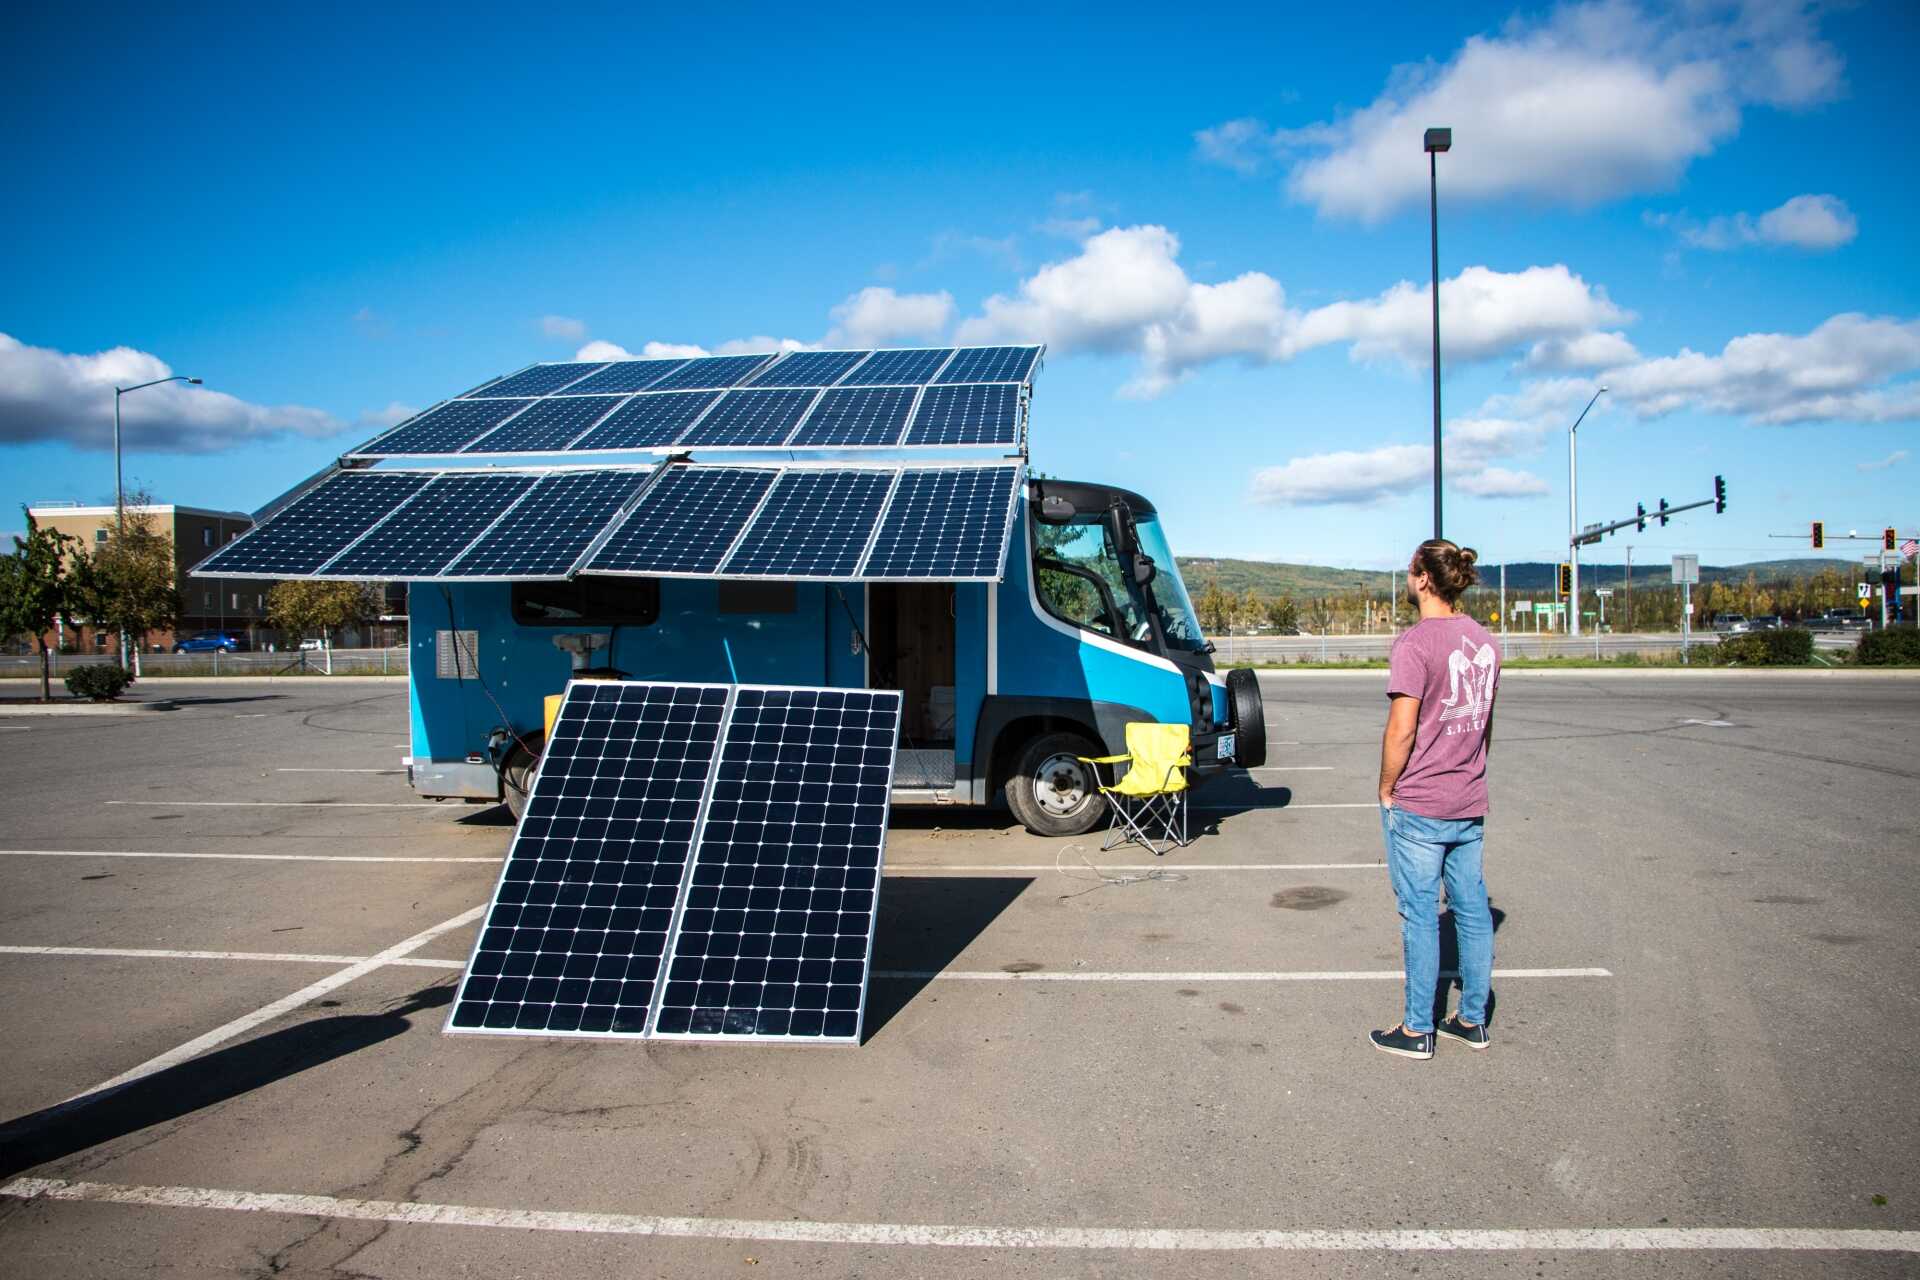 Route Del Sol fährt einen 100% elektrischen, solarbetriebenen Camper Van, dank Sunpowers Solartechnologie mit Unterstützung von Galt Energy.